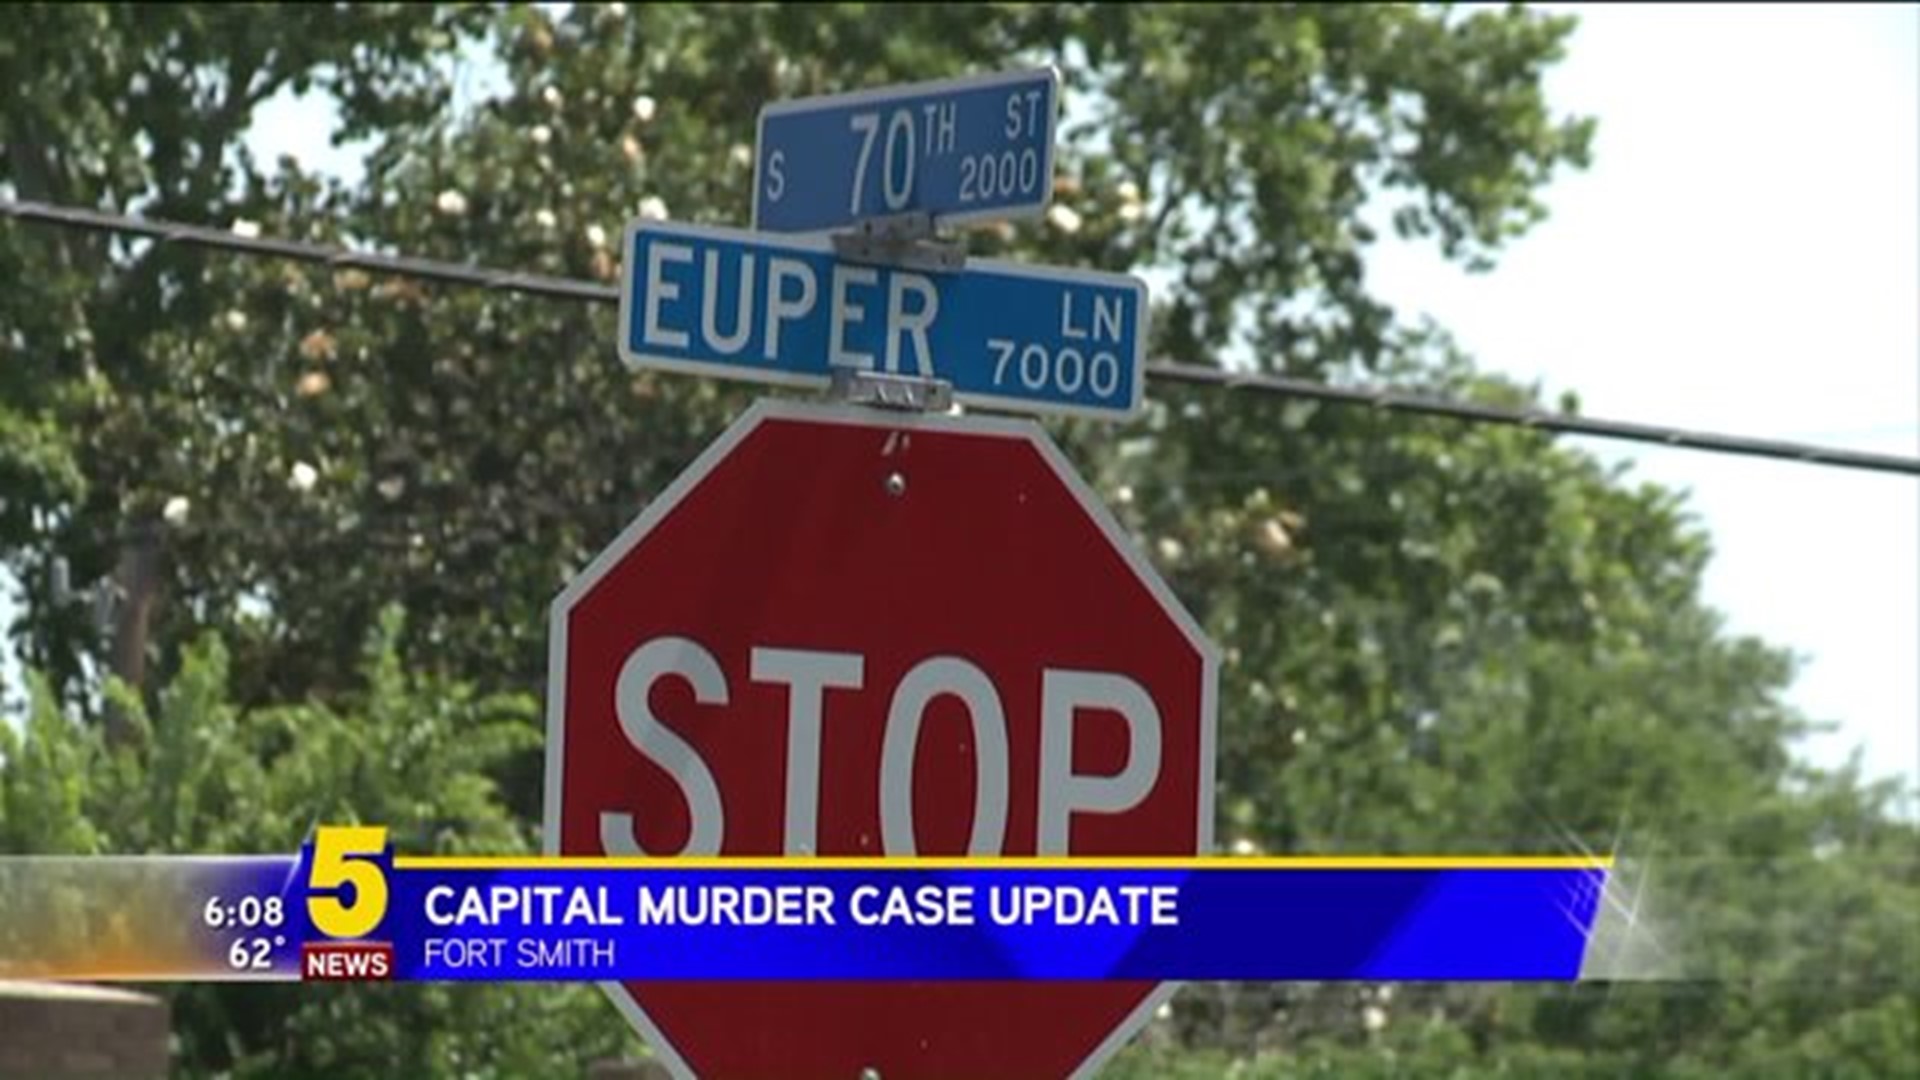 Capital Murder Case Update